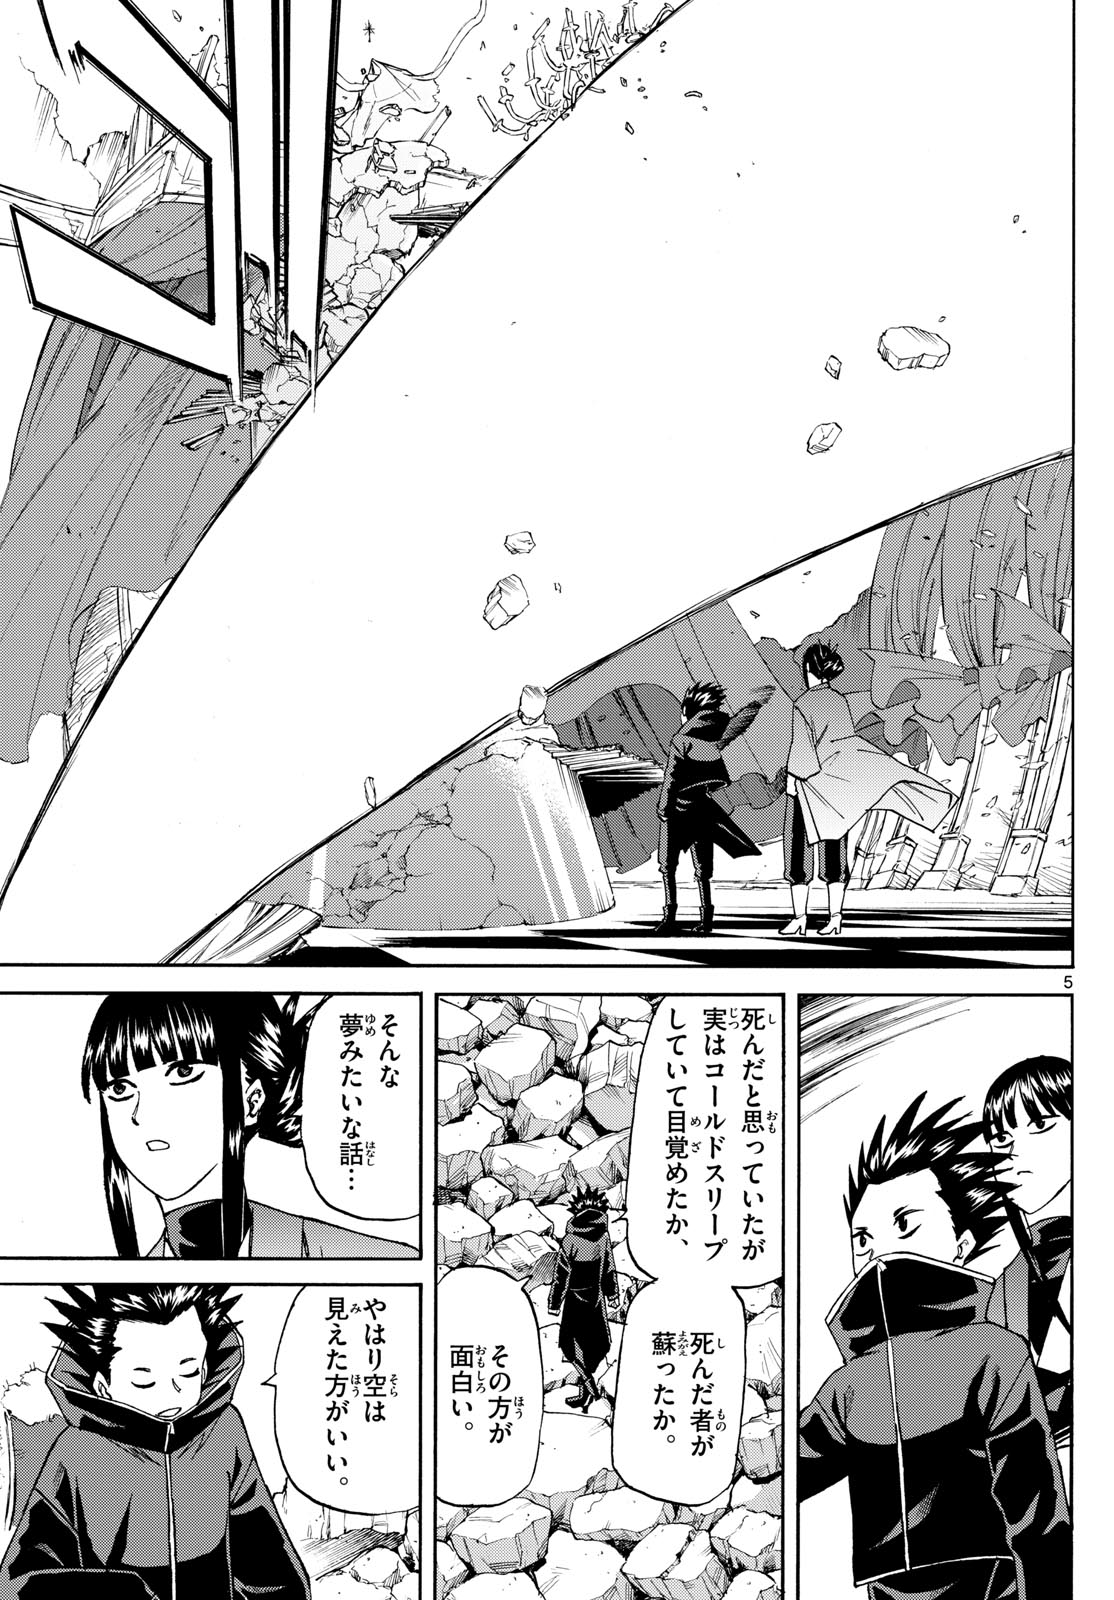 Tatsu to Ichigo - Chapter 191 - Page 5